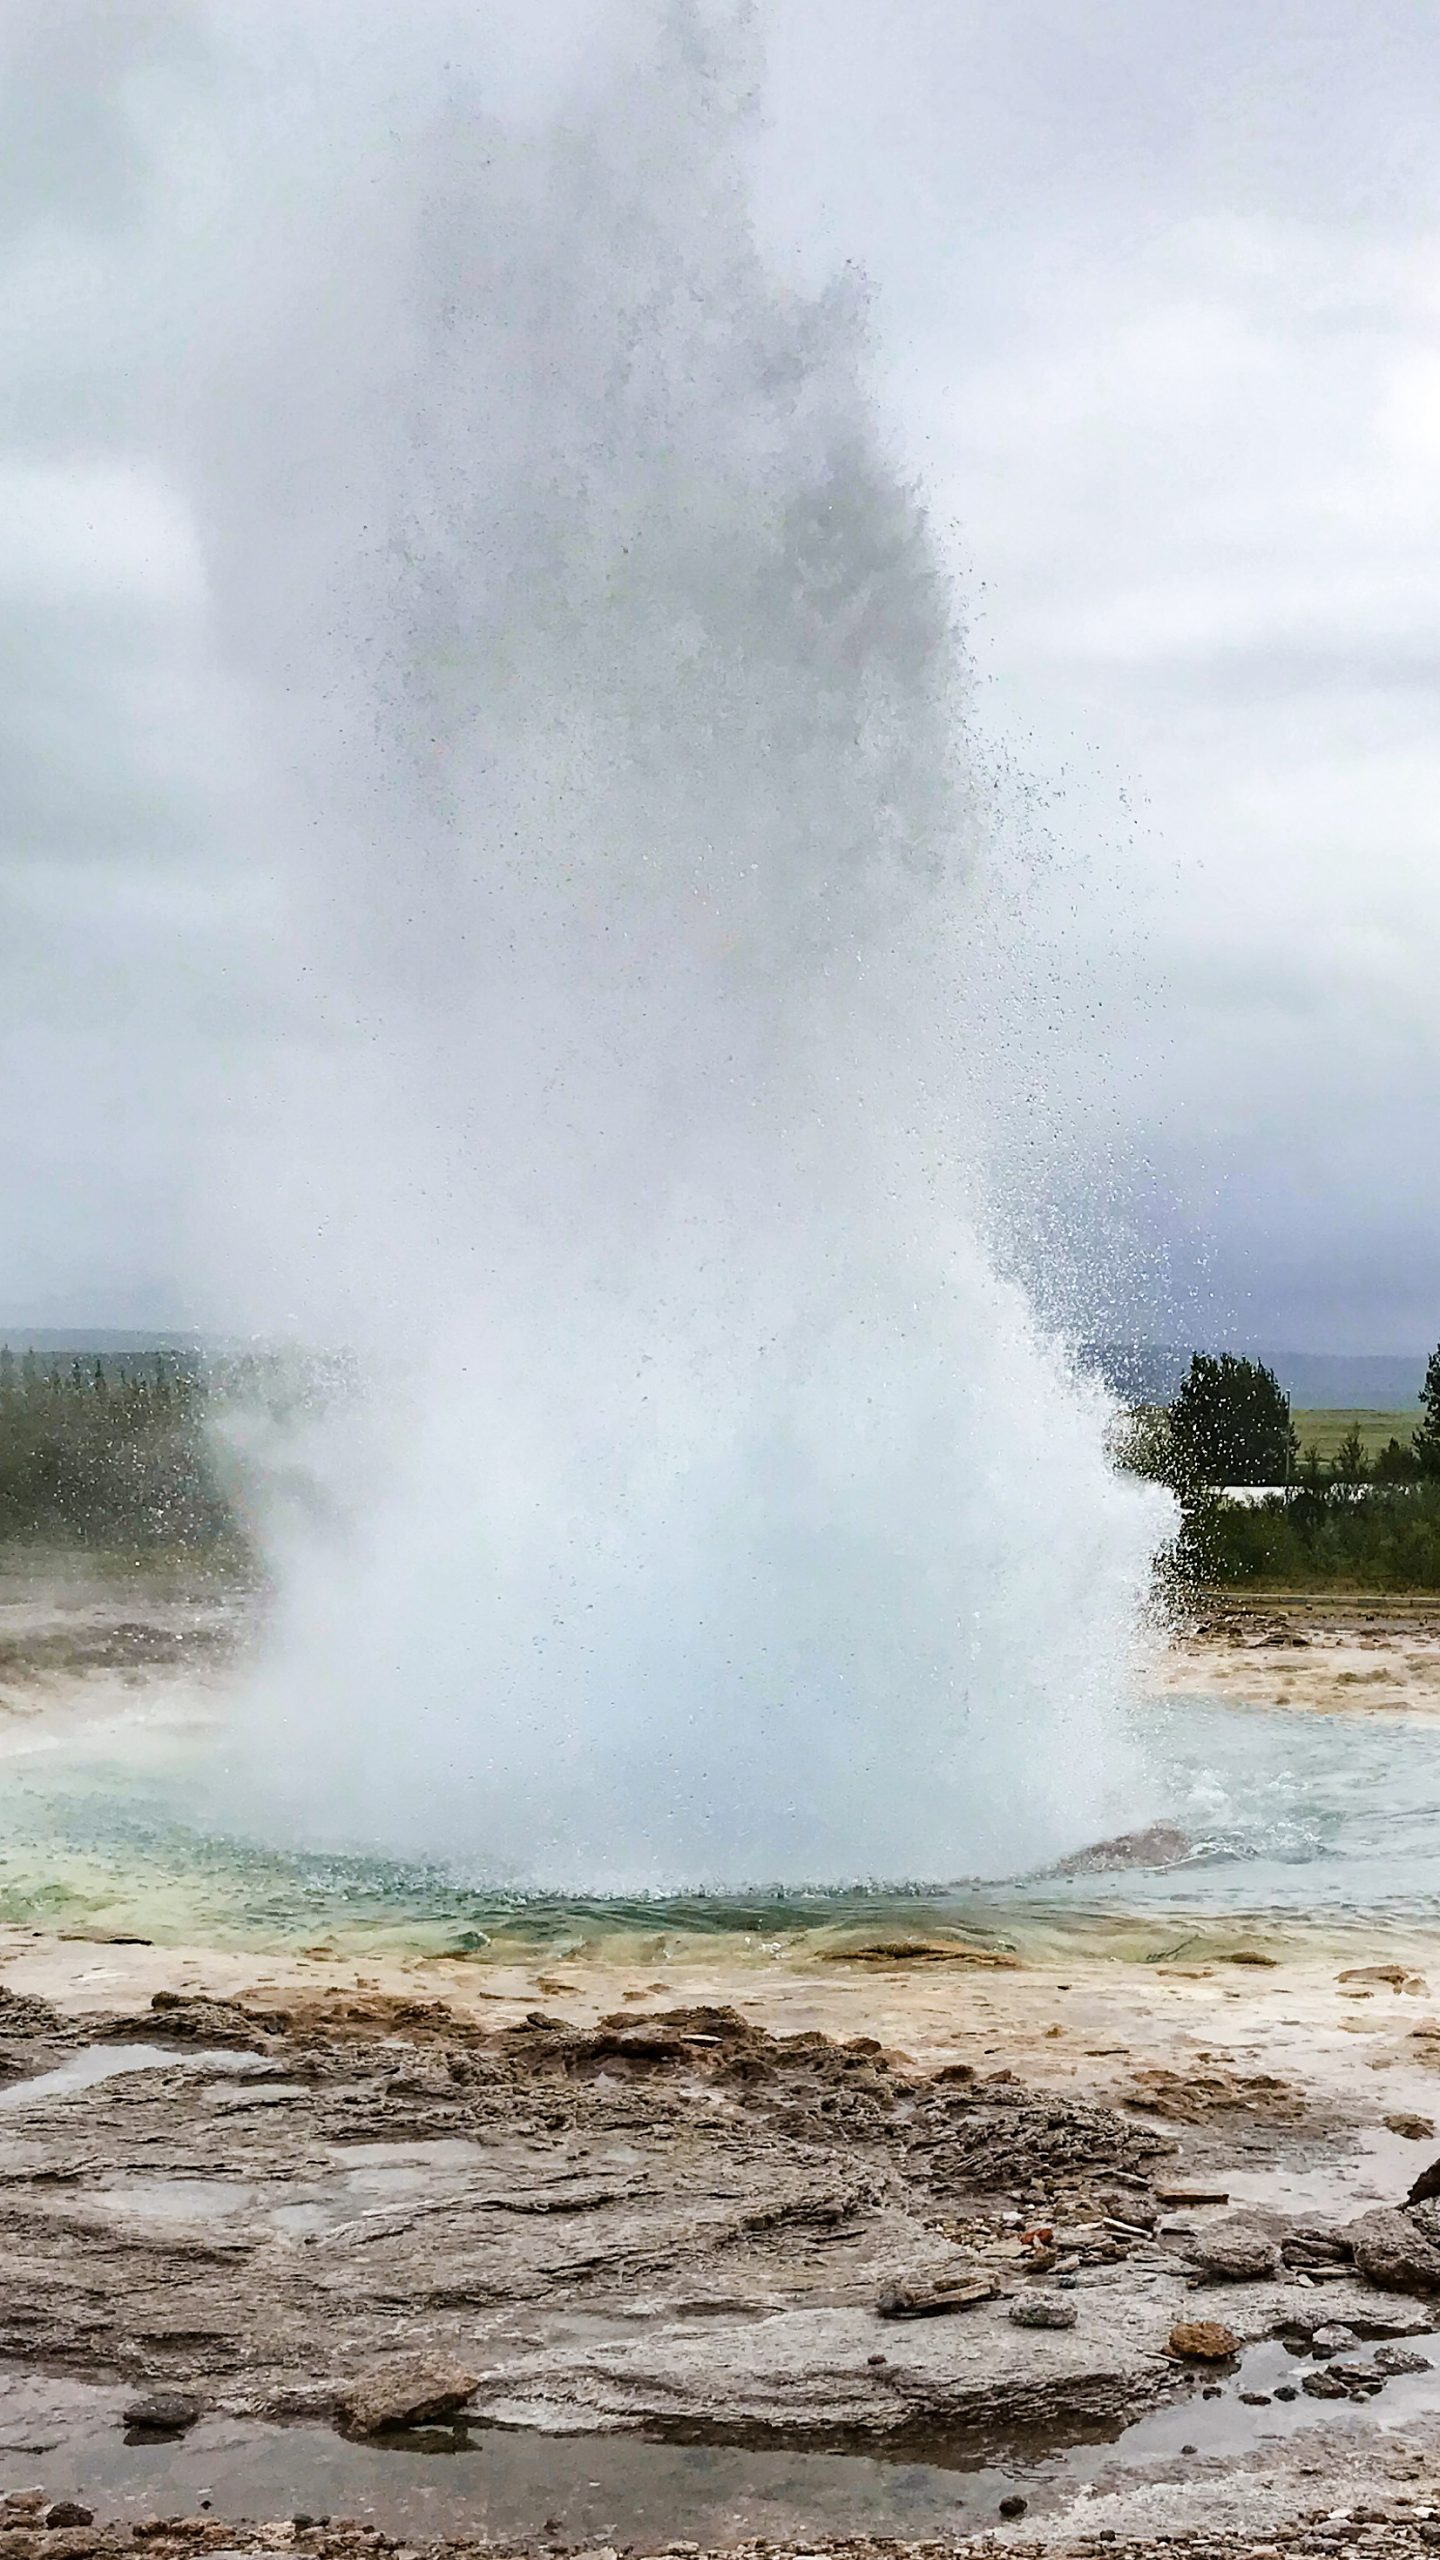 The Strokkur geyser in an erupted state